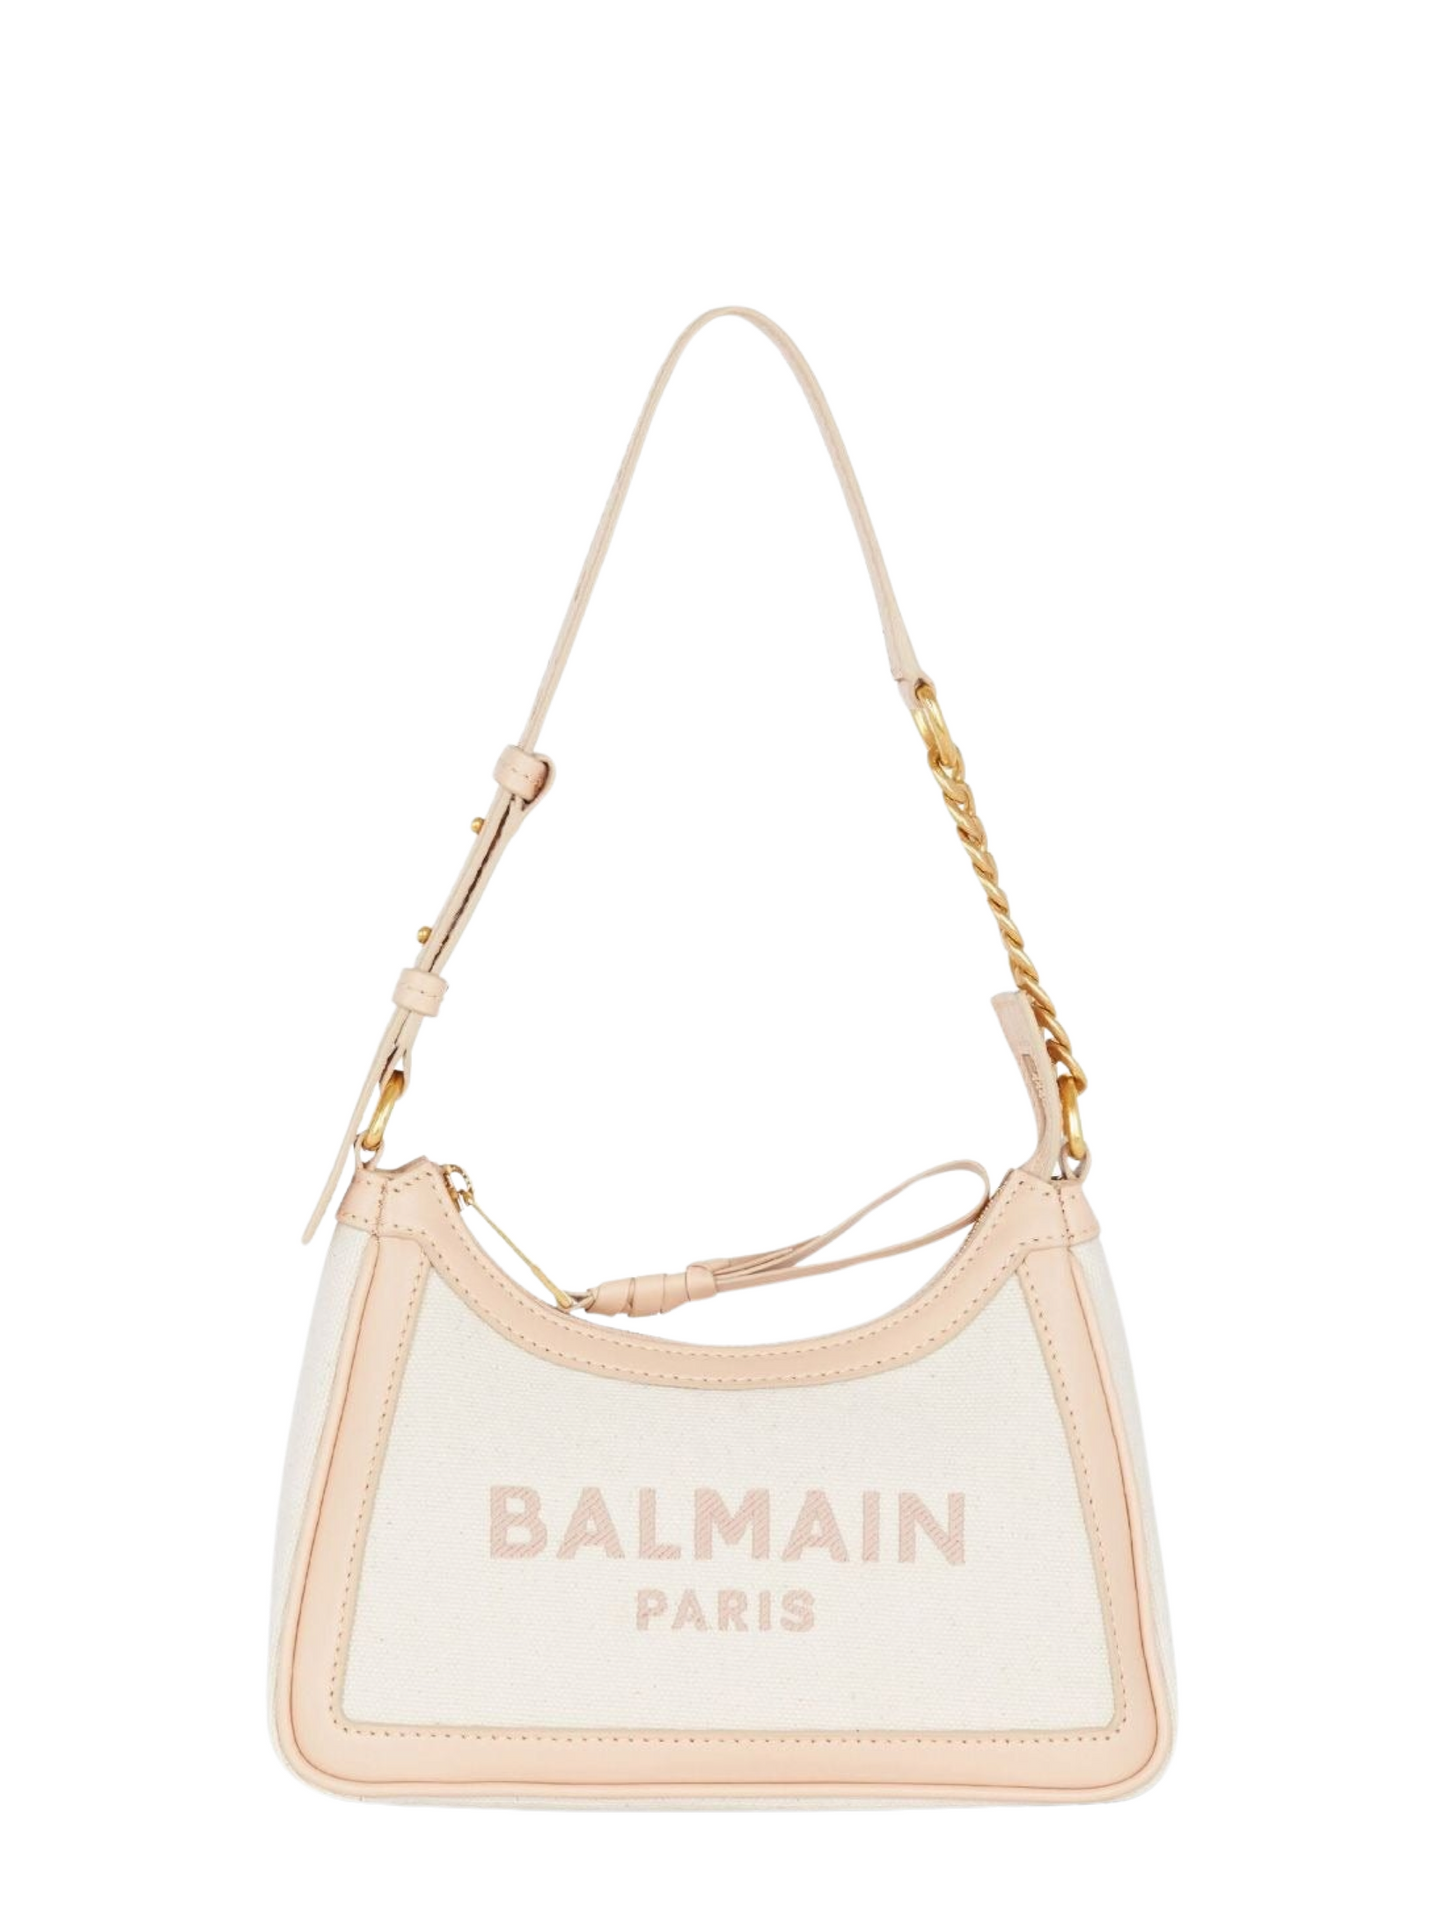 Balmain B-Army Shoulder Bag in Creme/Nude Rose